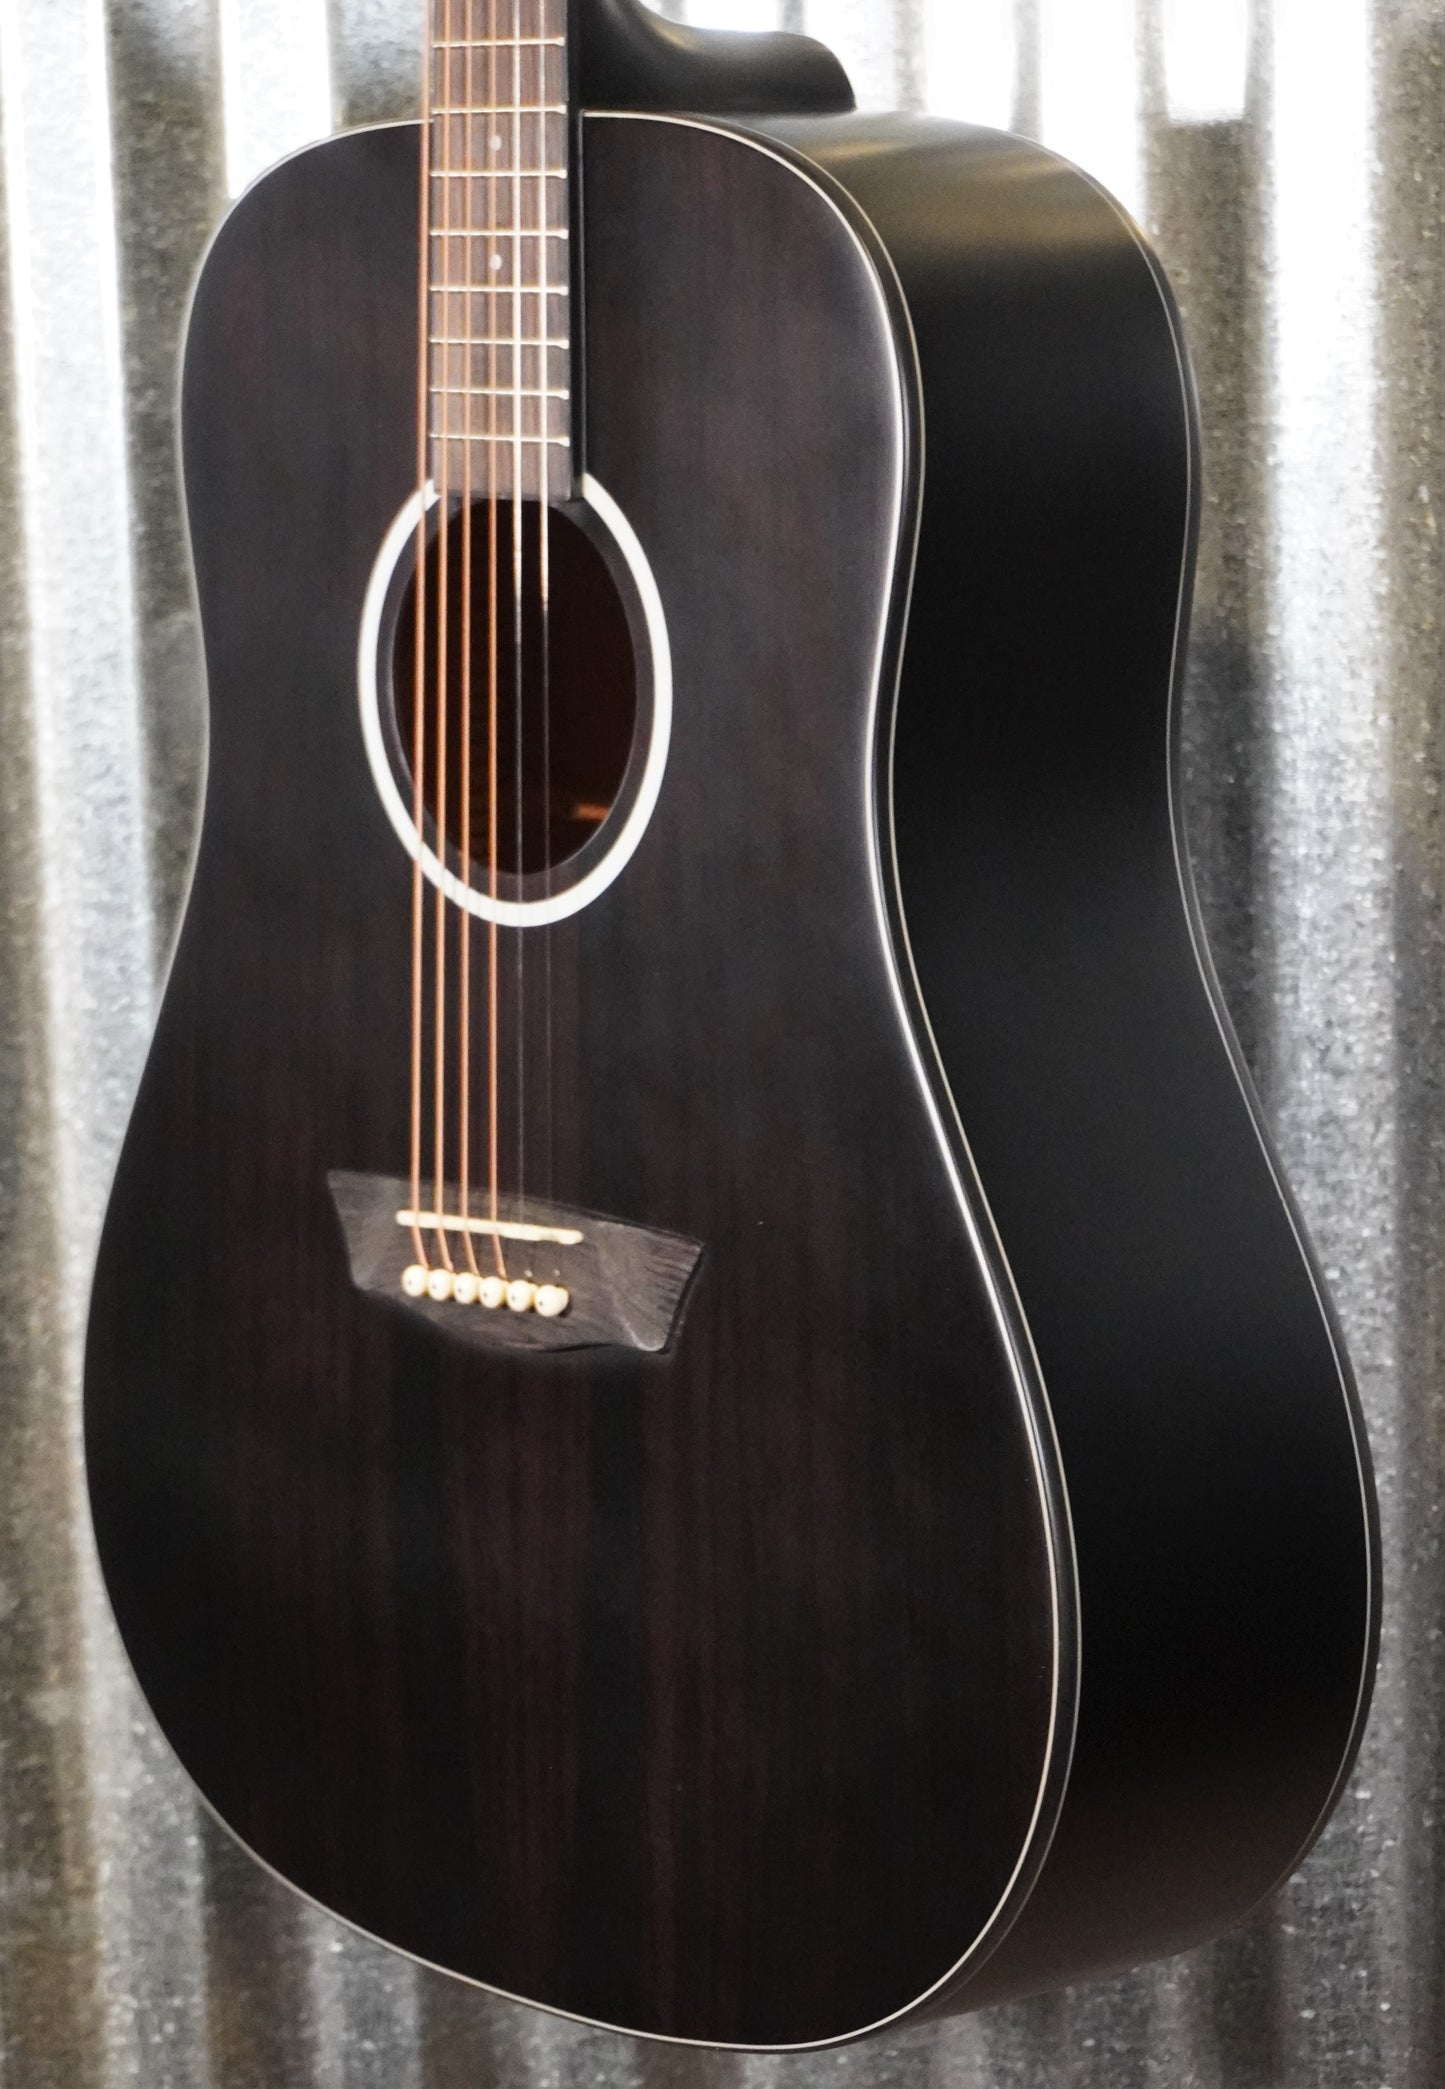 Washburn Deep Forest Ebony D Acoustic Guitar DFED-U #5942 Used